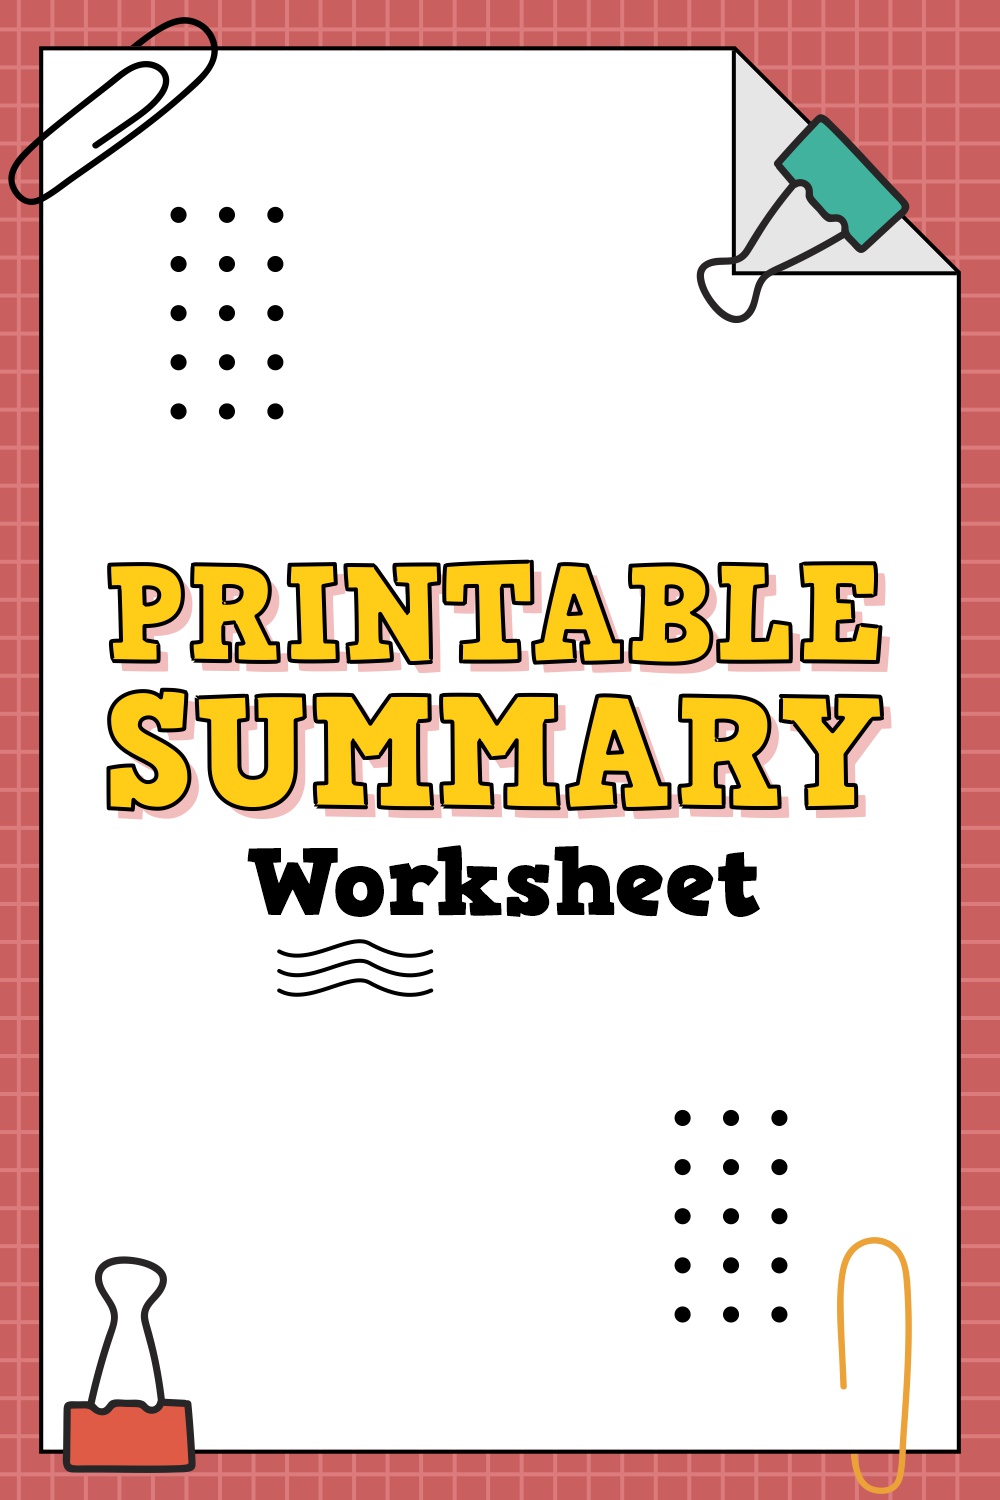 Printable Summary Worksheet